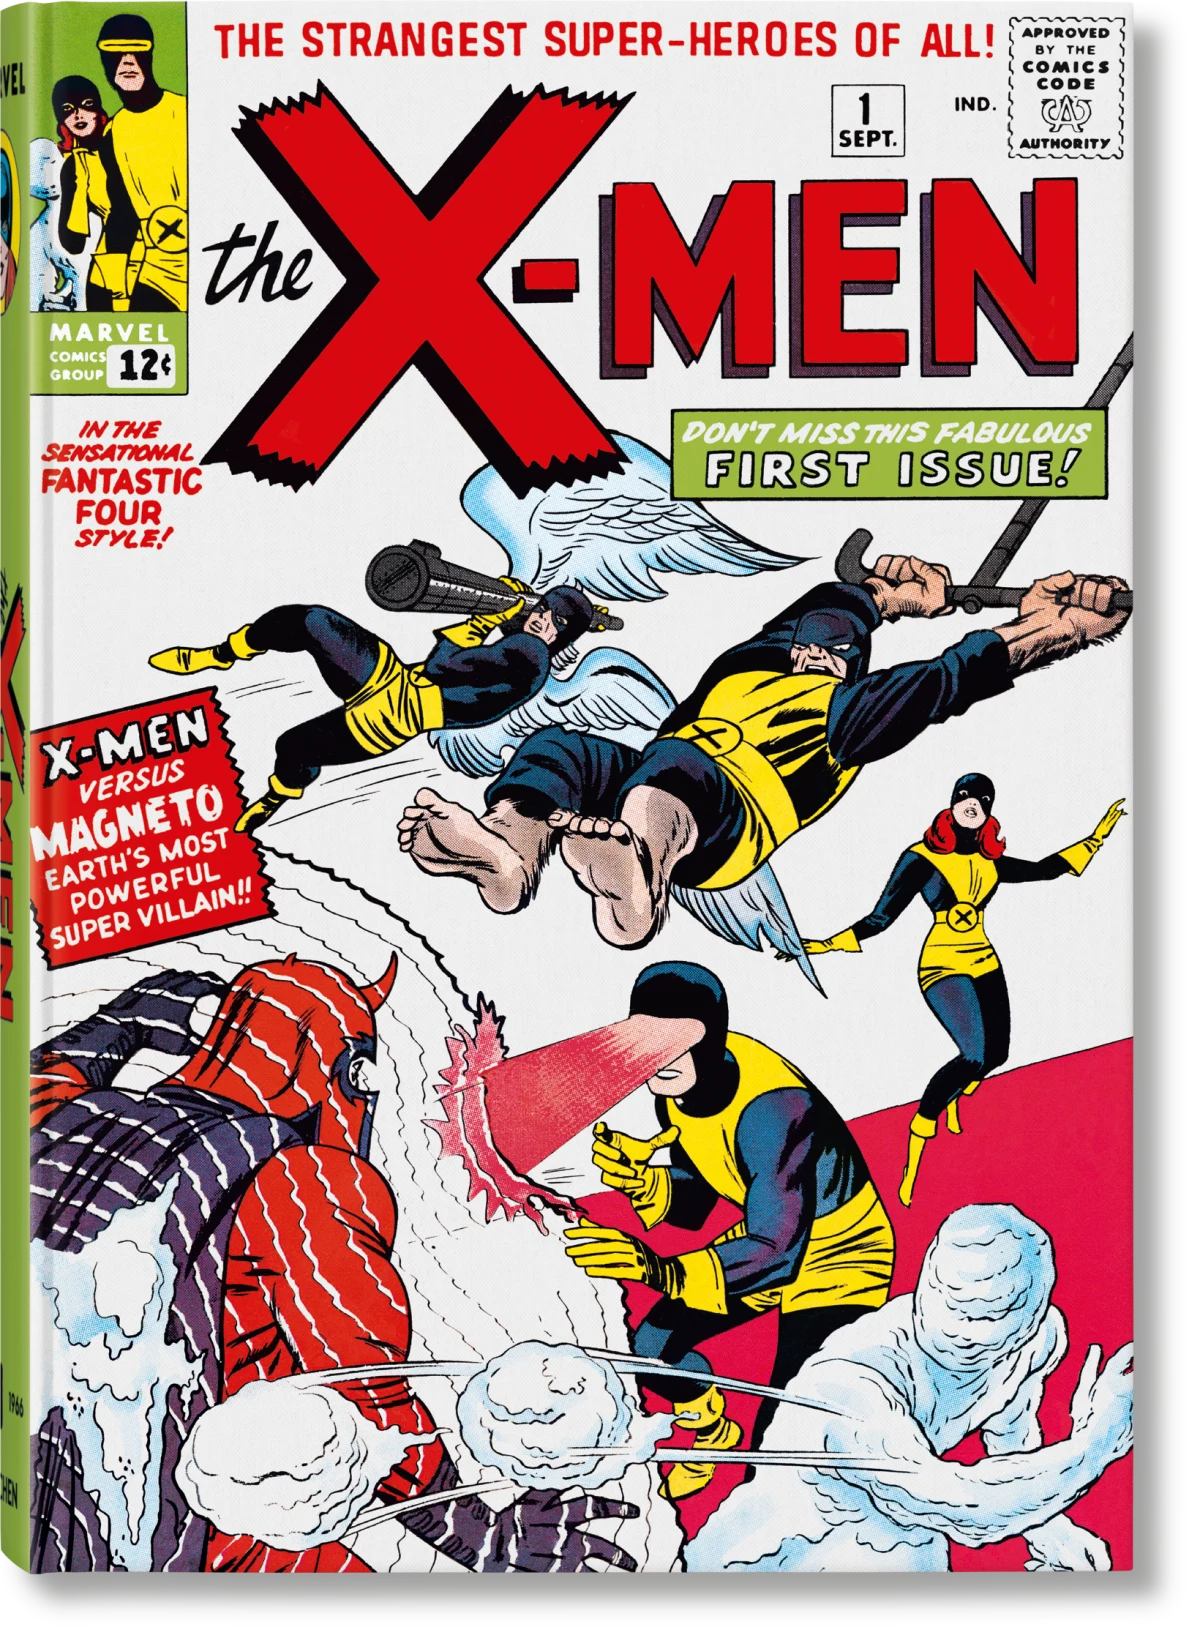 Marvel Comics Library. X-Men. Vol. 1. 1963–1966